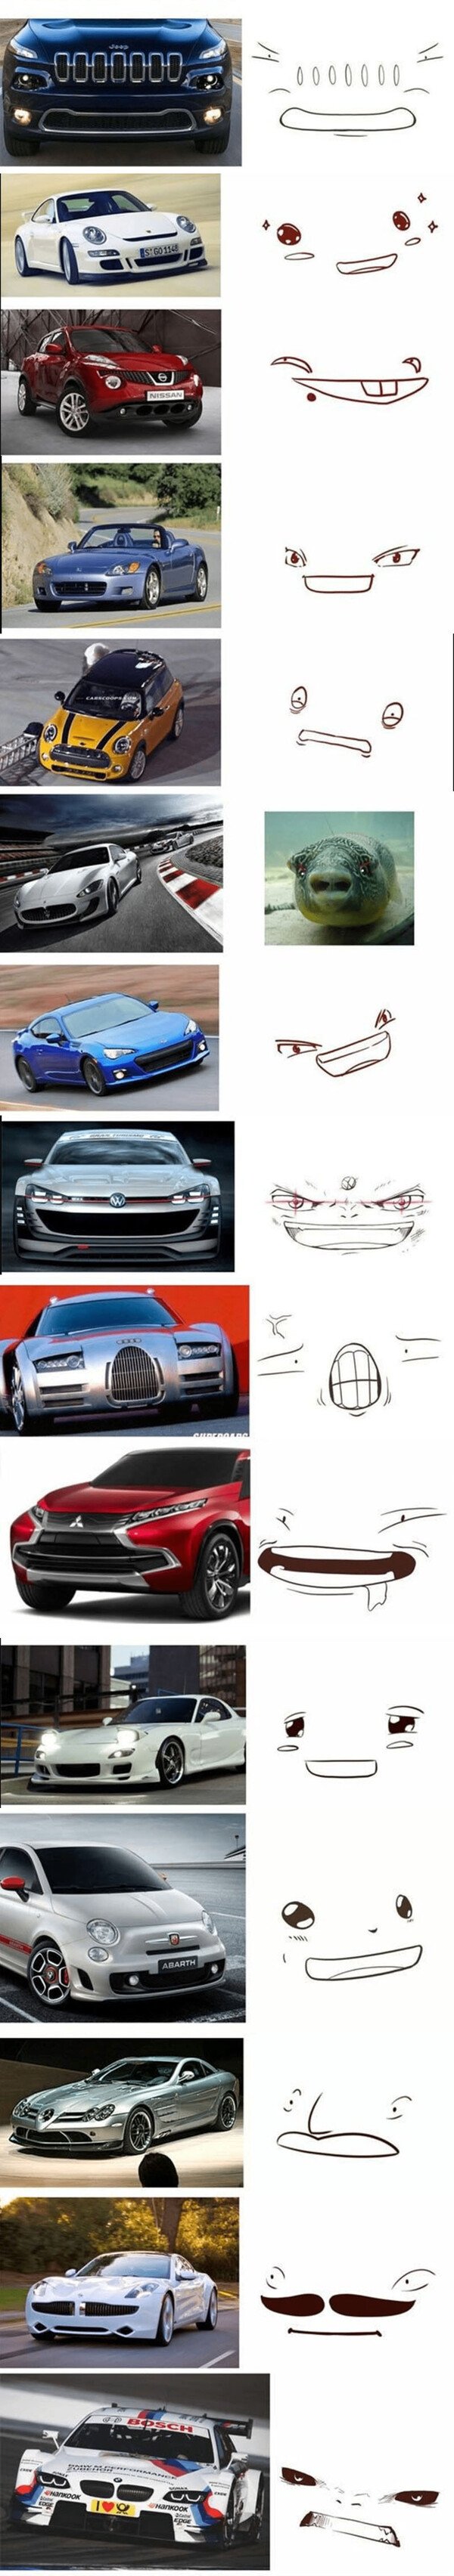 Meme_otros - Cada coche tiene su cara